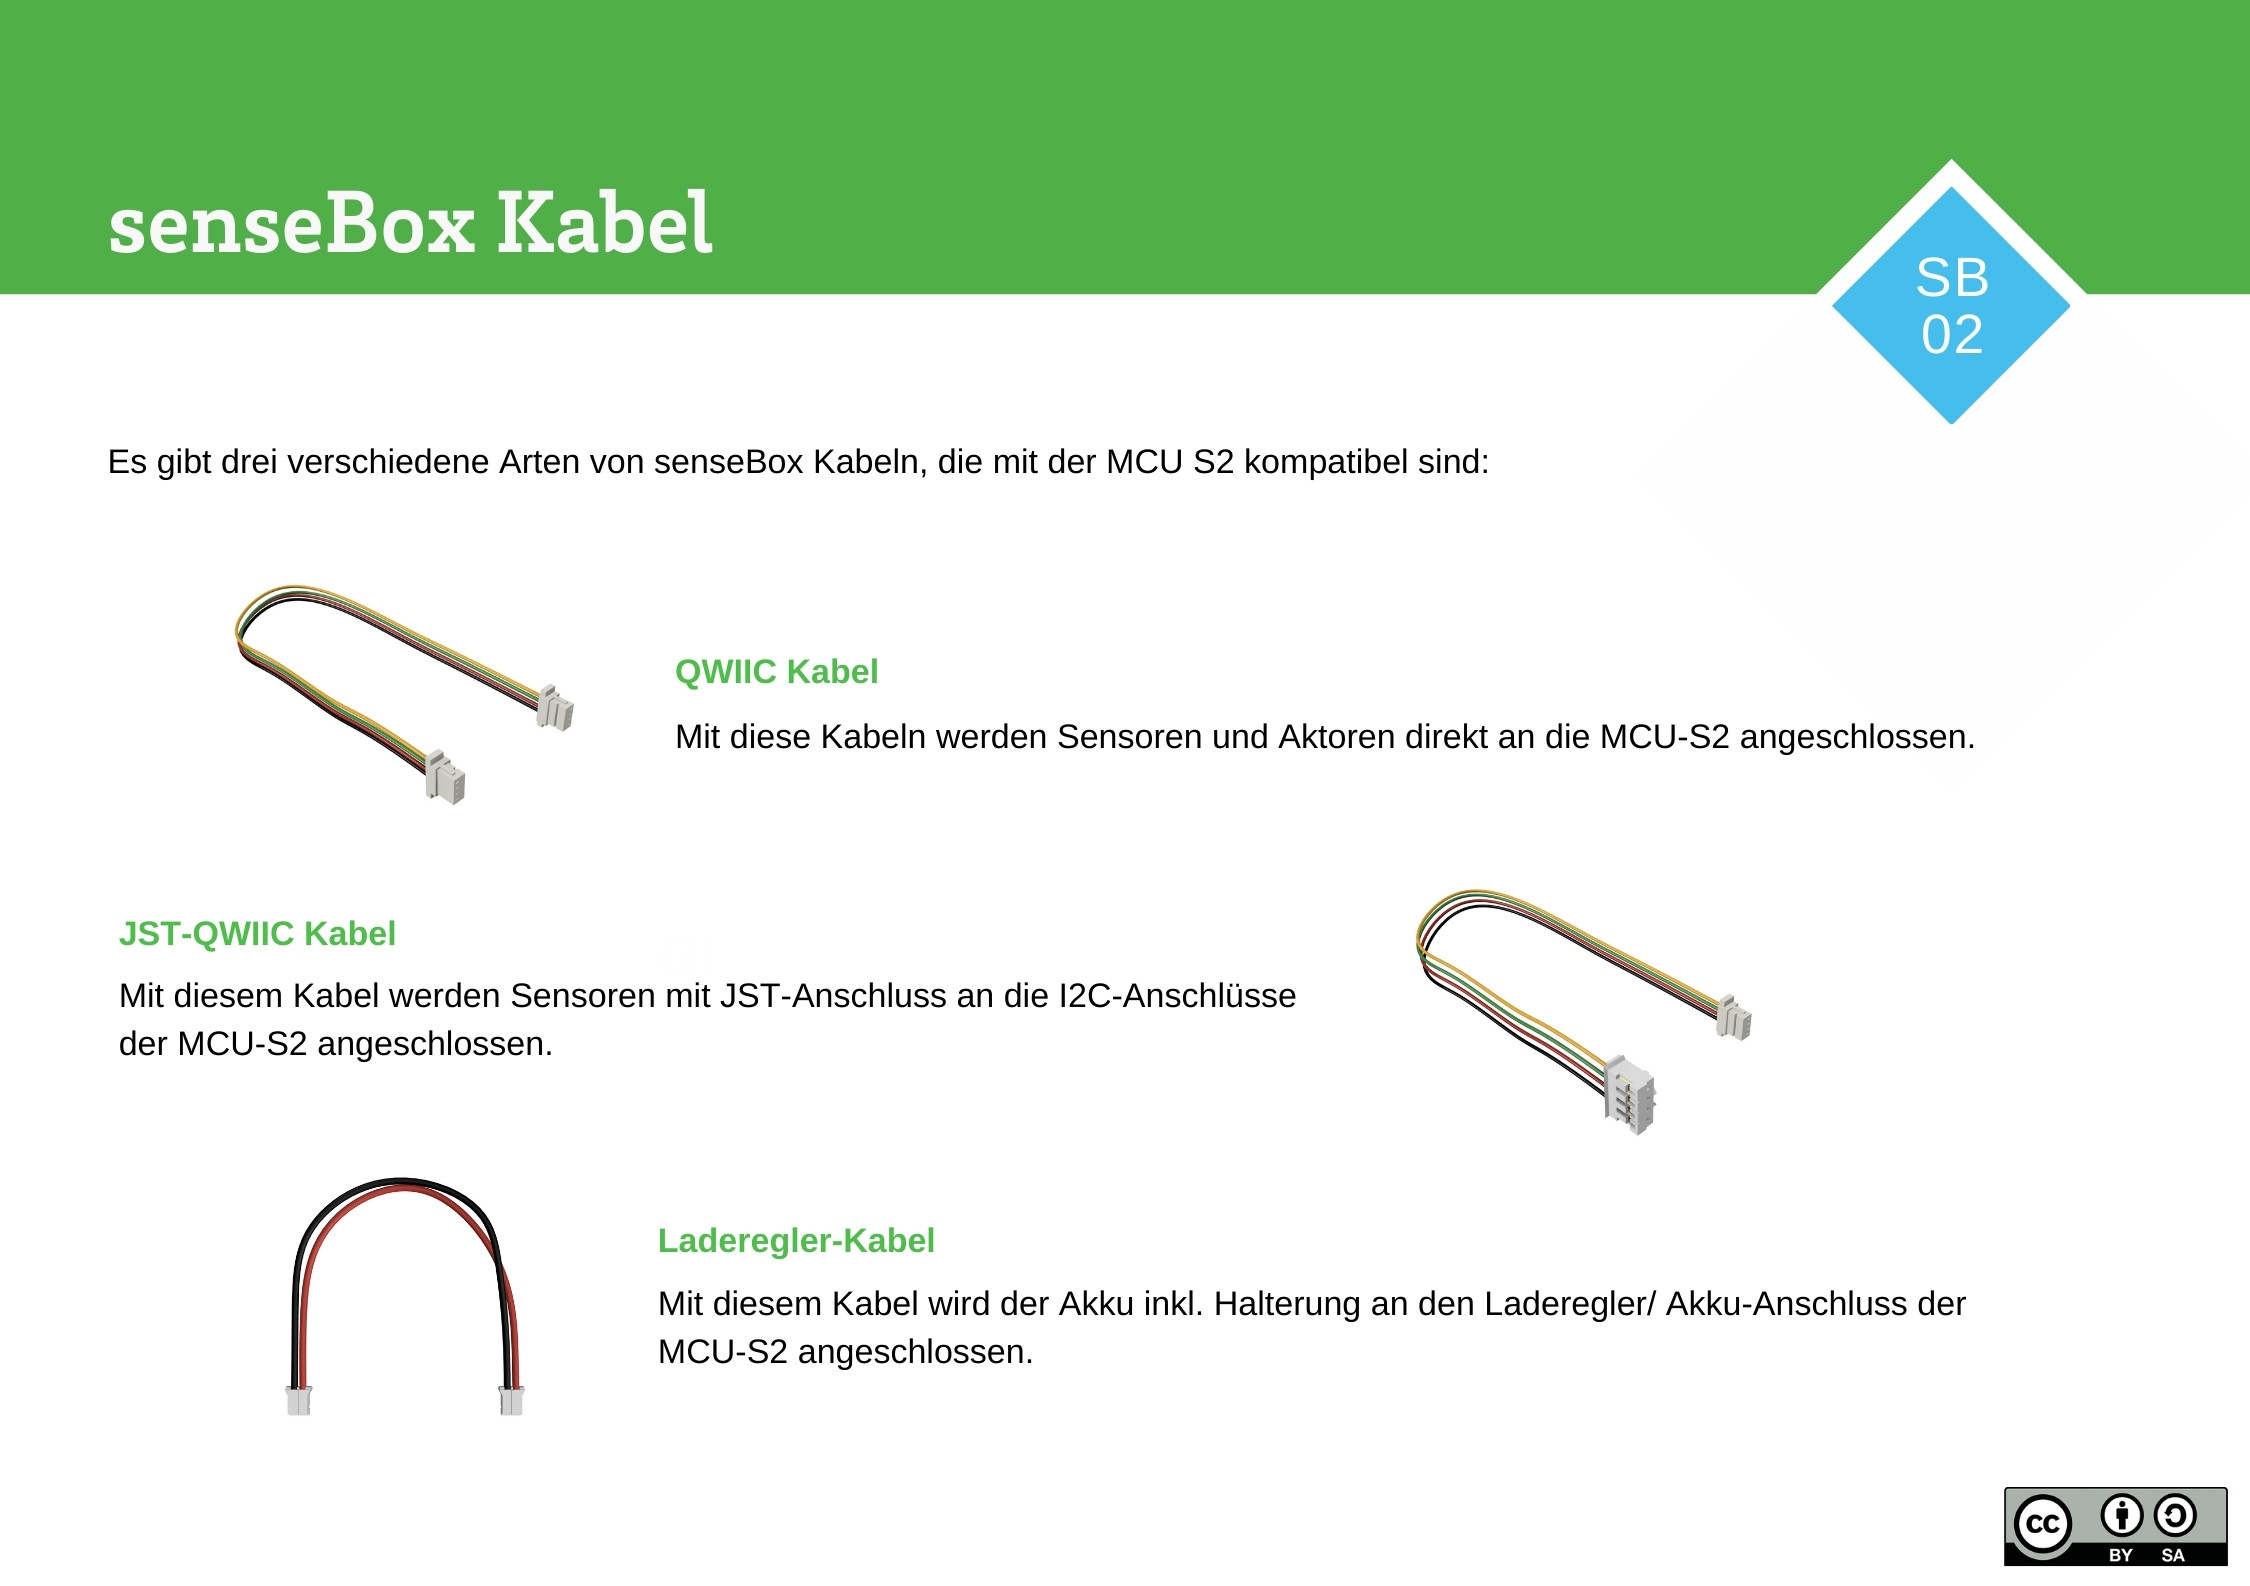 senseBox Kabel